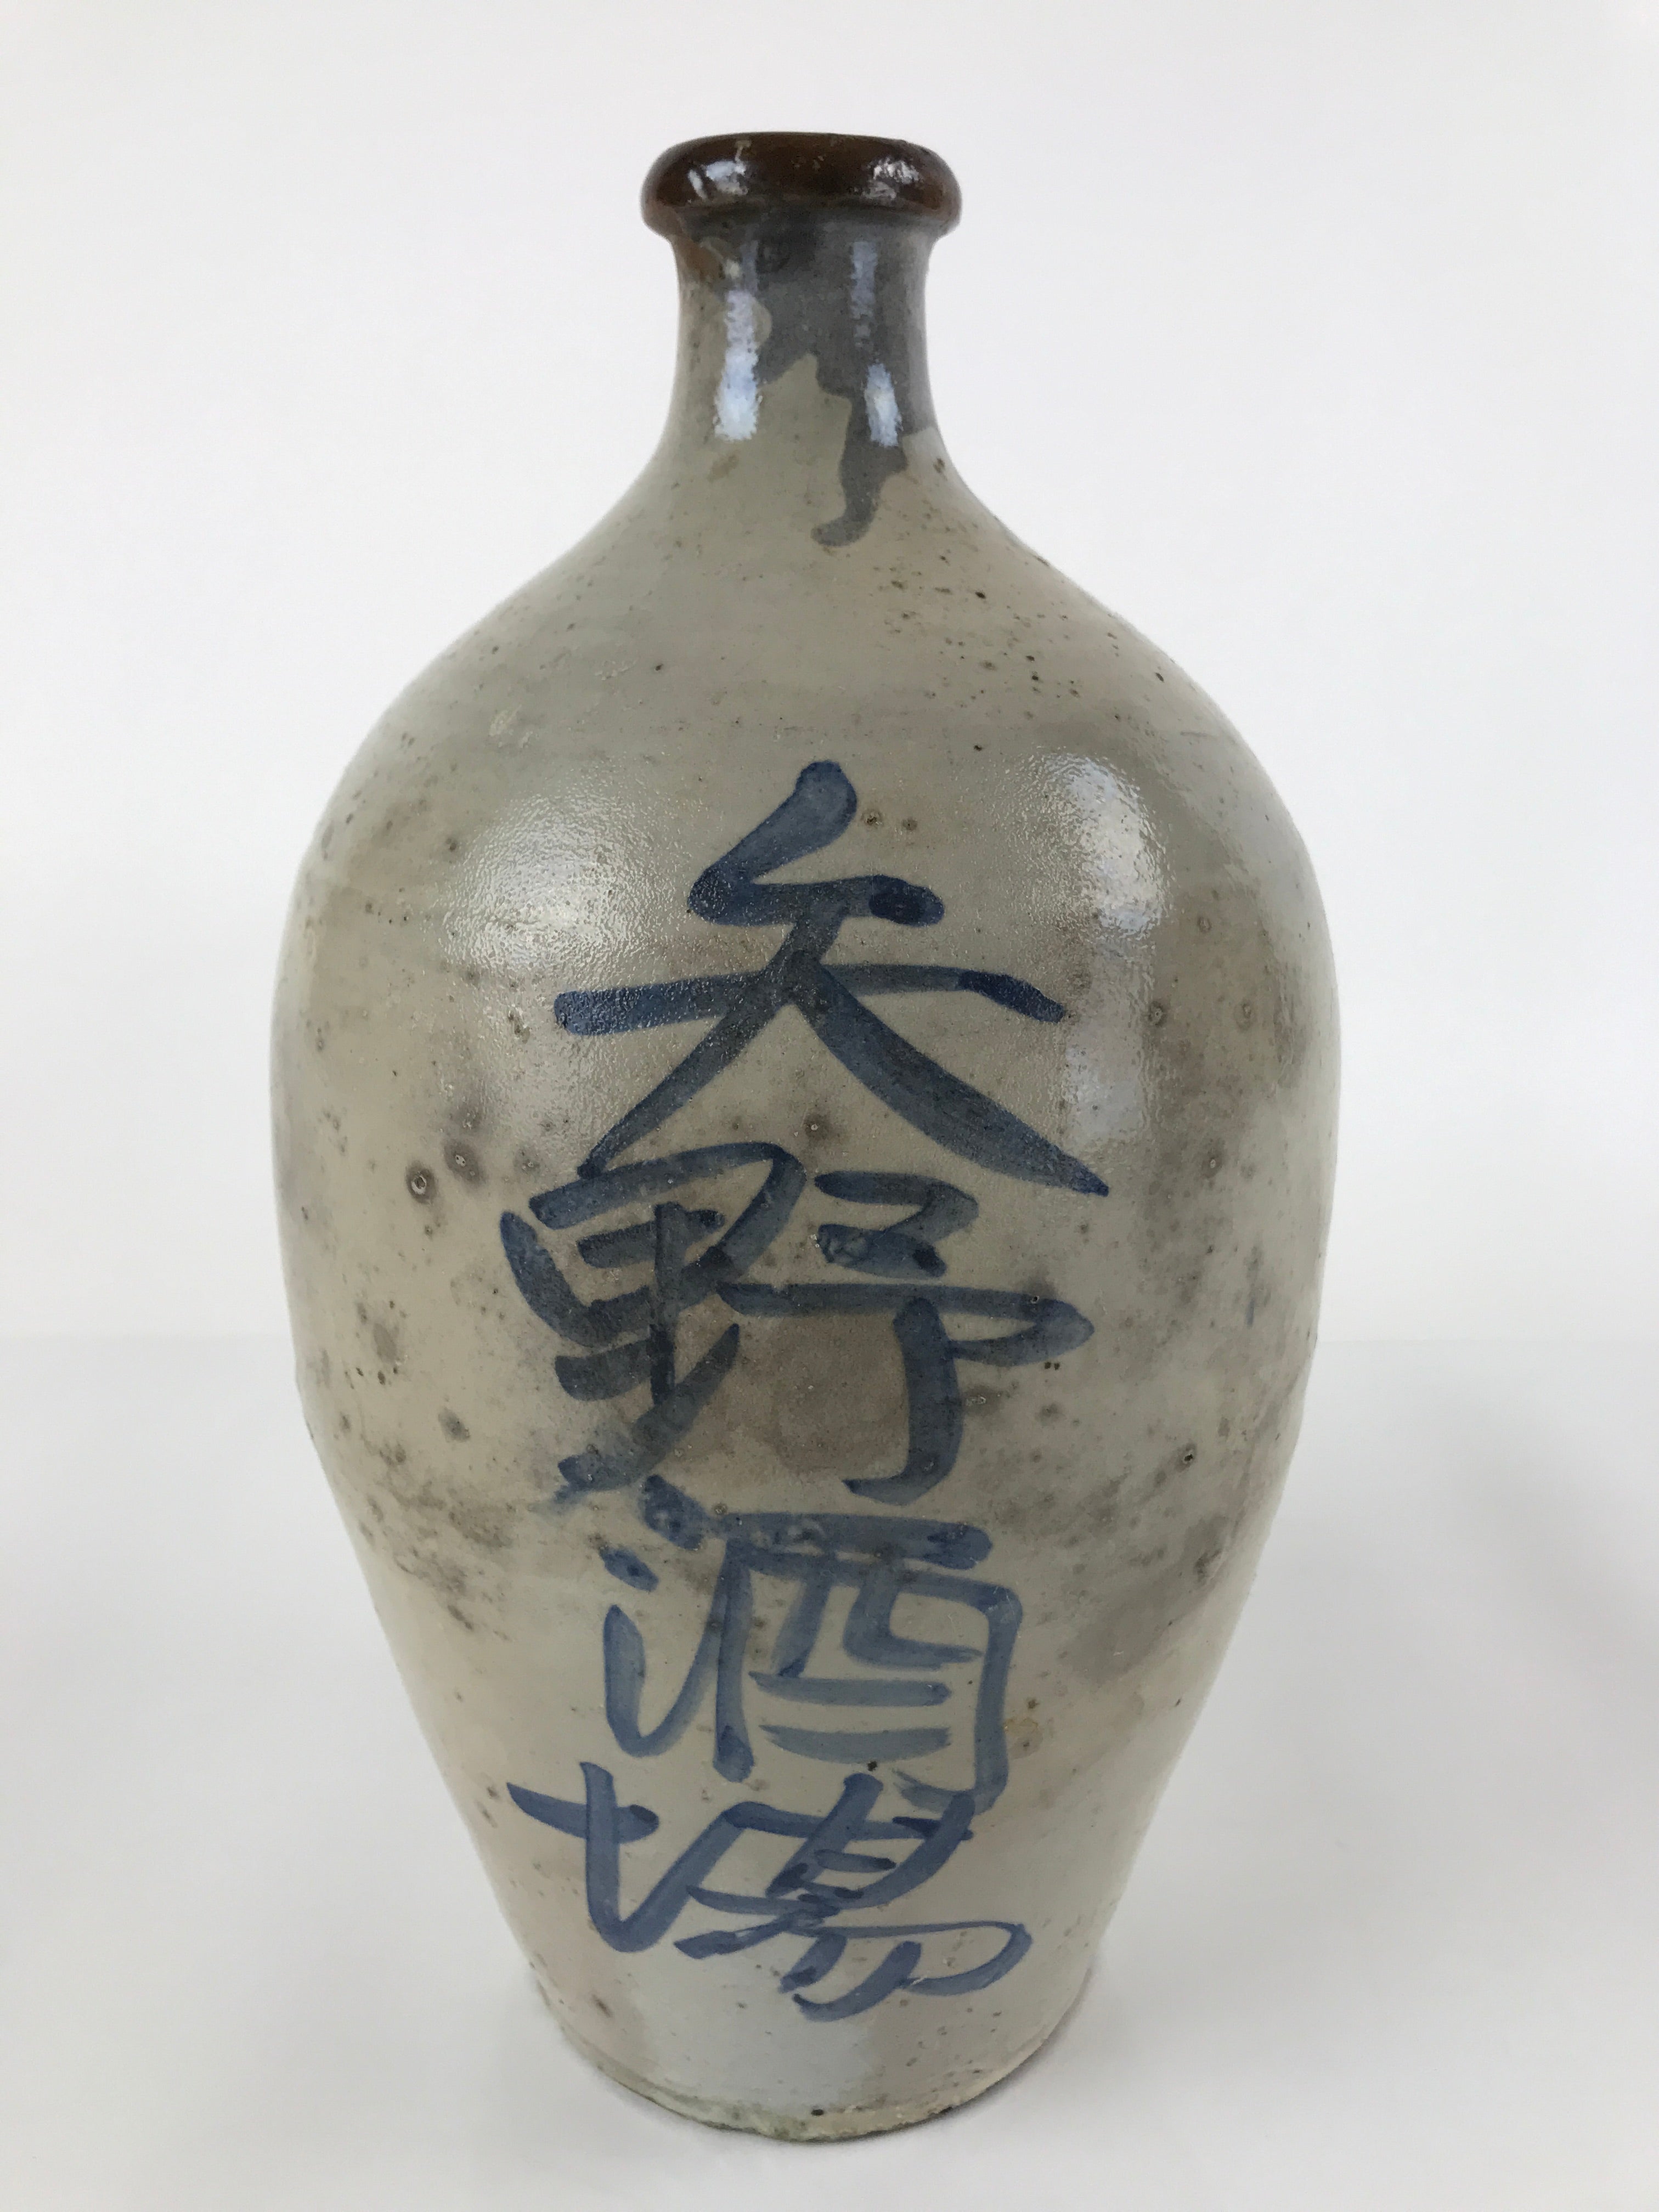 Antique C1880 Japanese Ceramic Sake Bottle Kayoi-Tokkuri Gray Blue Kanji TS632